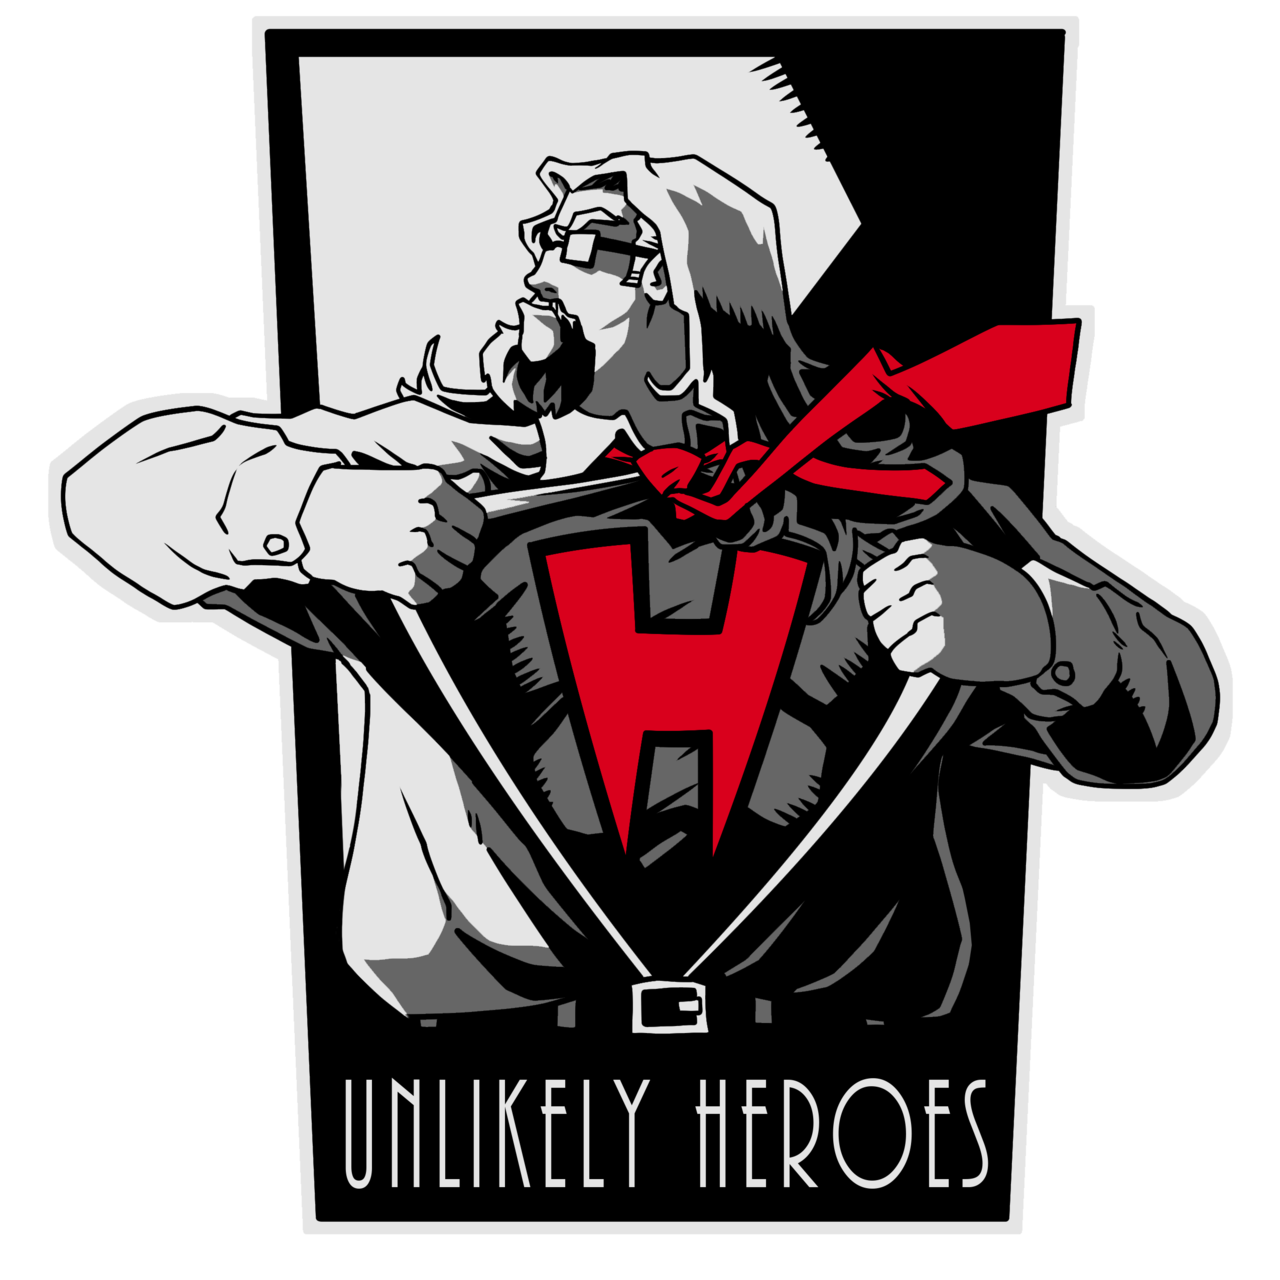 Unlikely Heroes Studios Newsletter